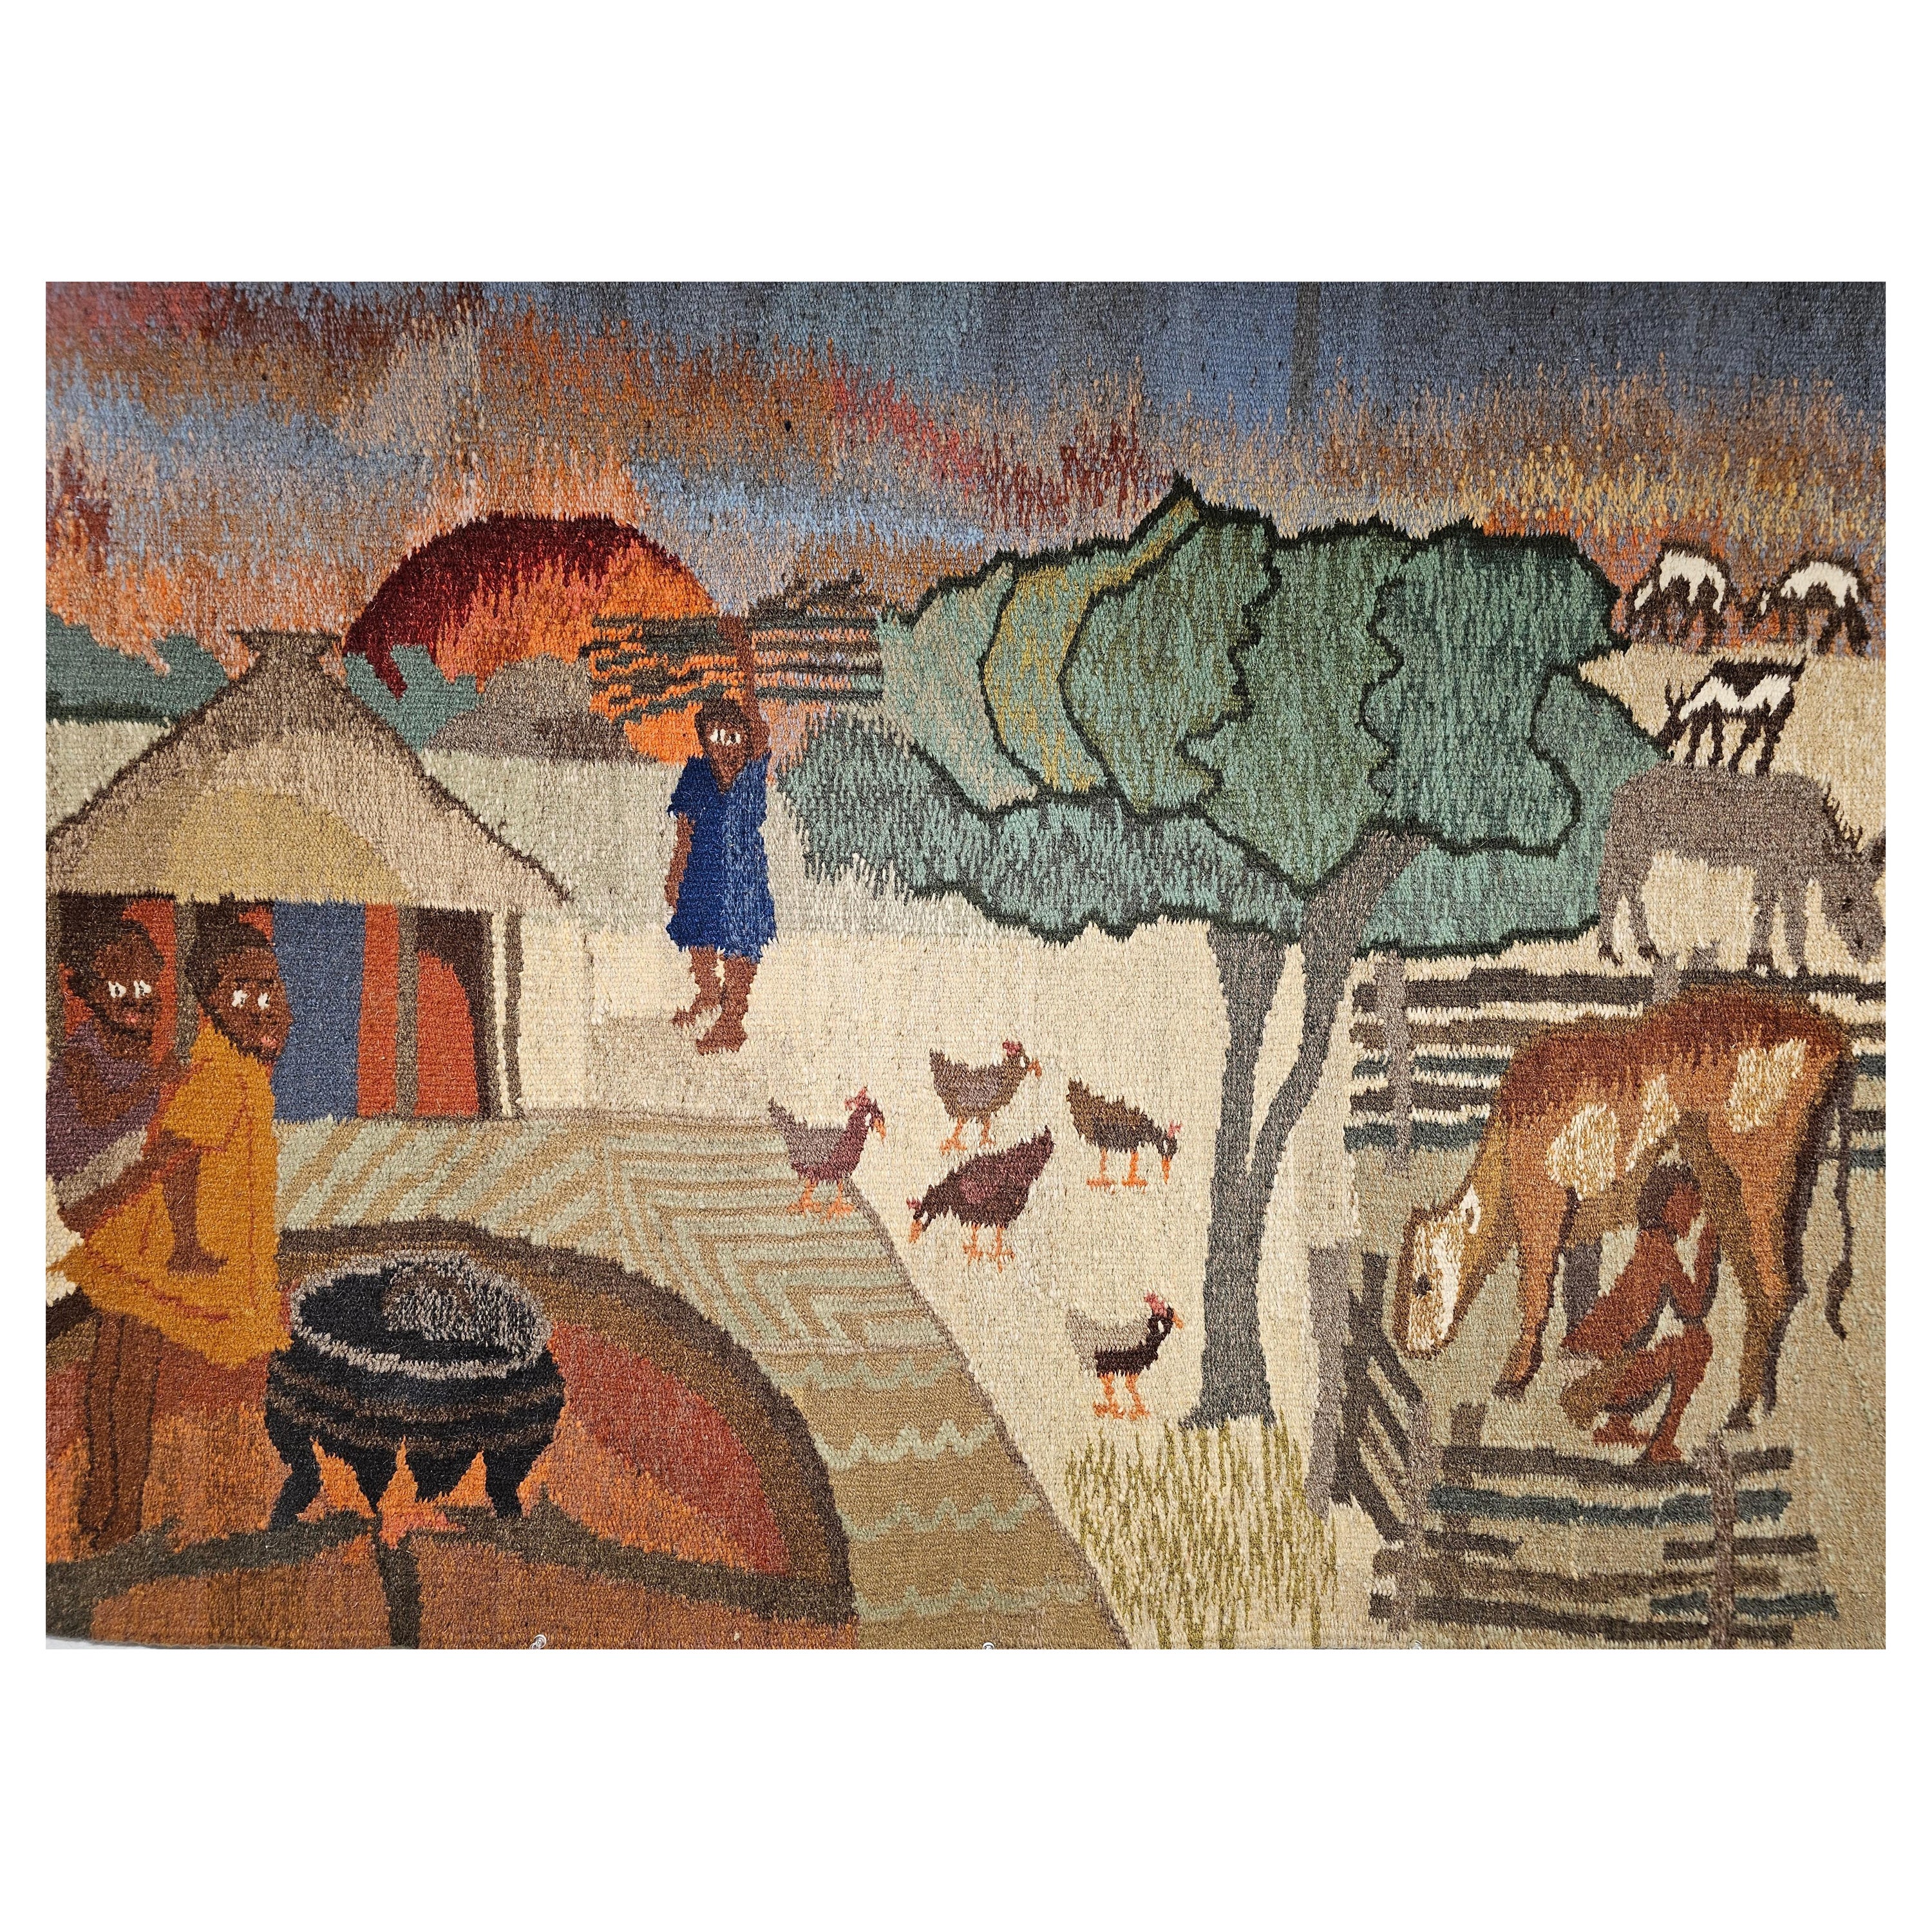 Handgewebter afrikanischer Wandteppich im Vintage-Stil mit Lebensszenen um ein Dorf